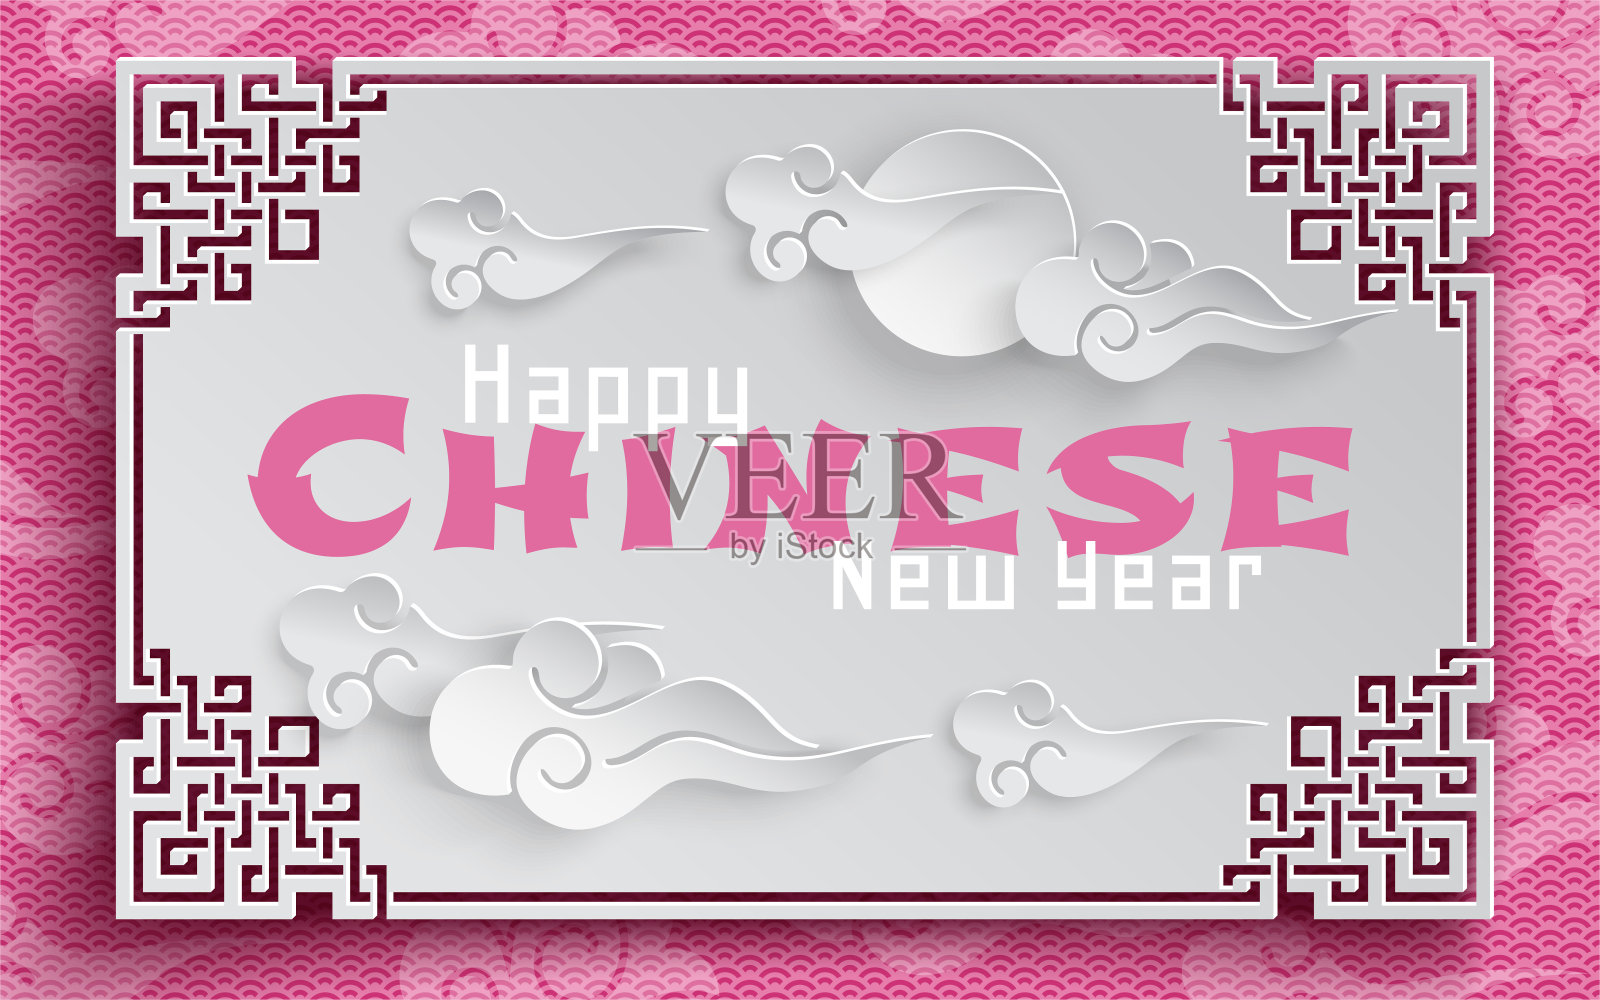 太阳和云彩与东方框架上的粉红色图案背景为中国新年贺卡，剪纸风格。向量设计模板素材